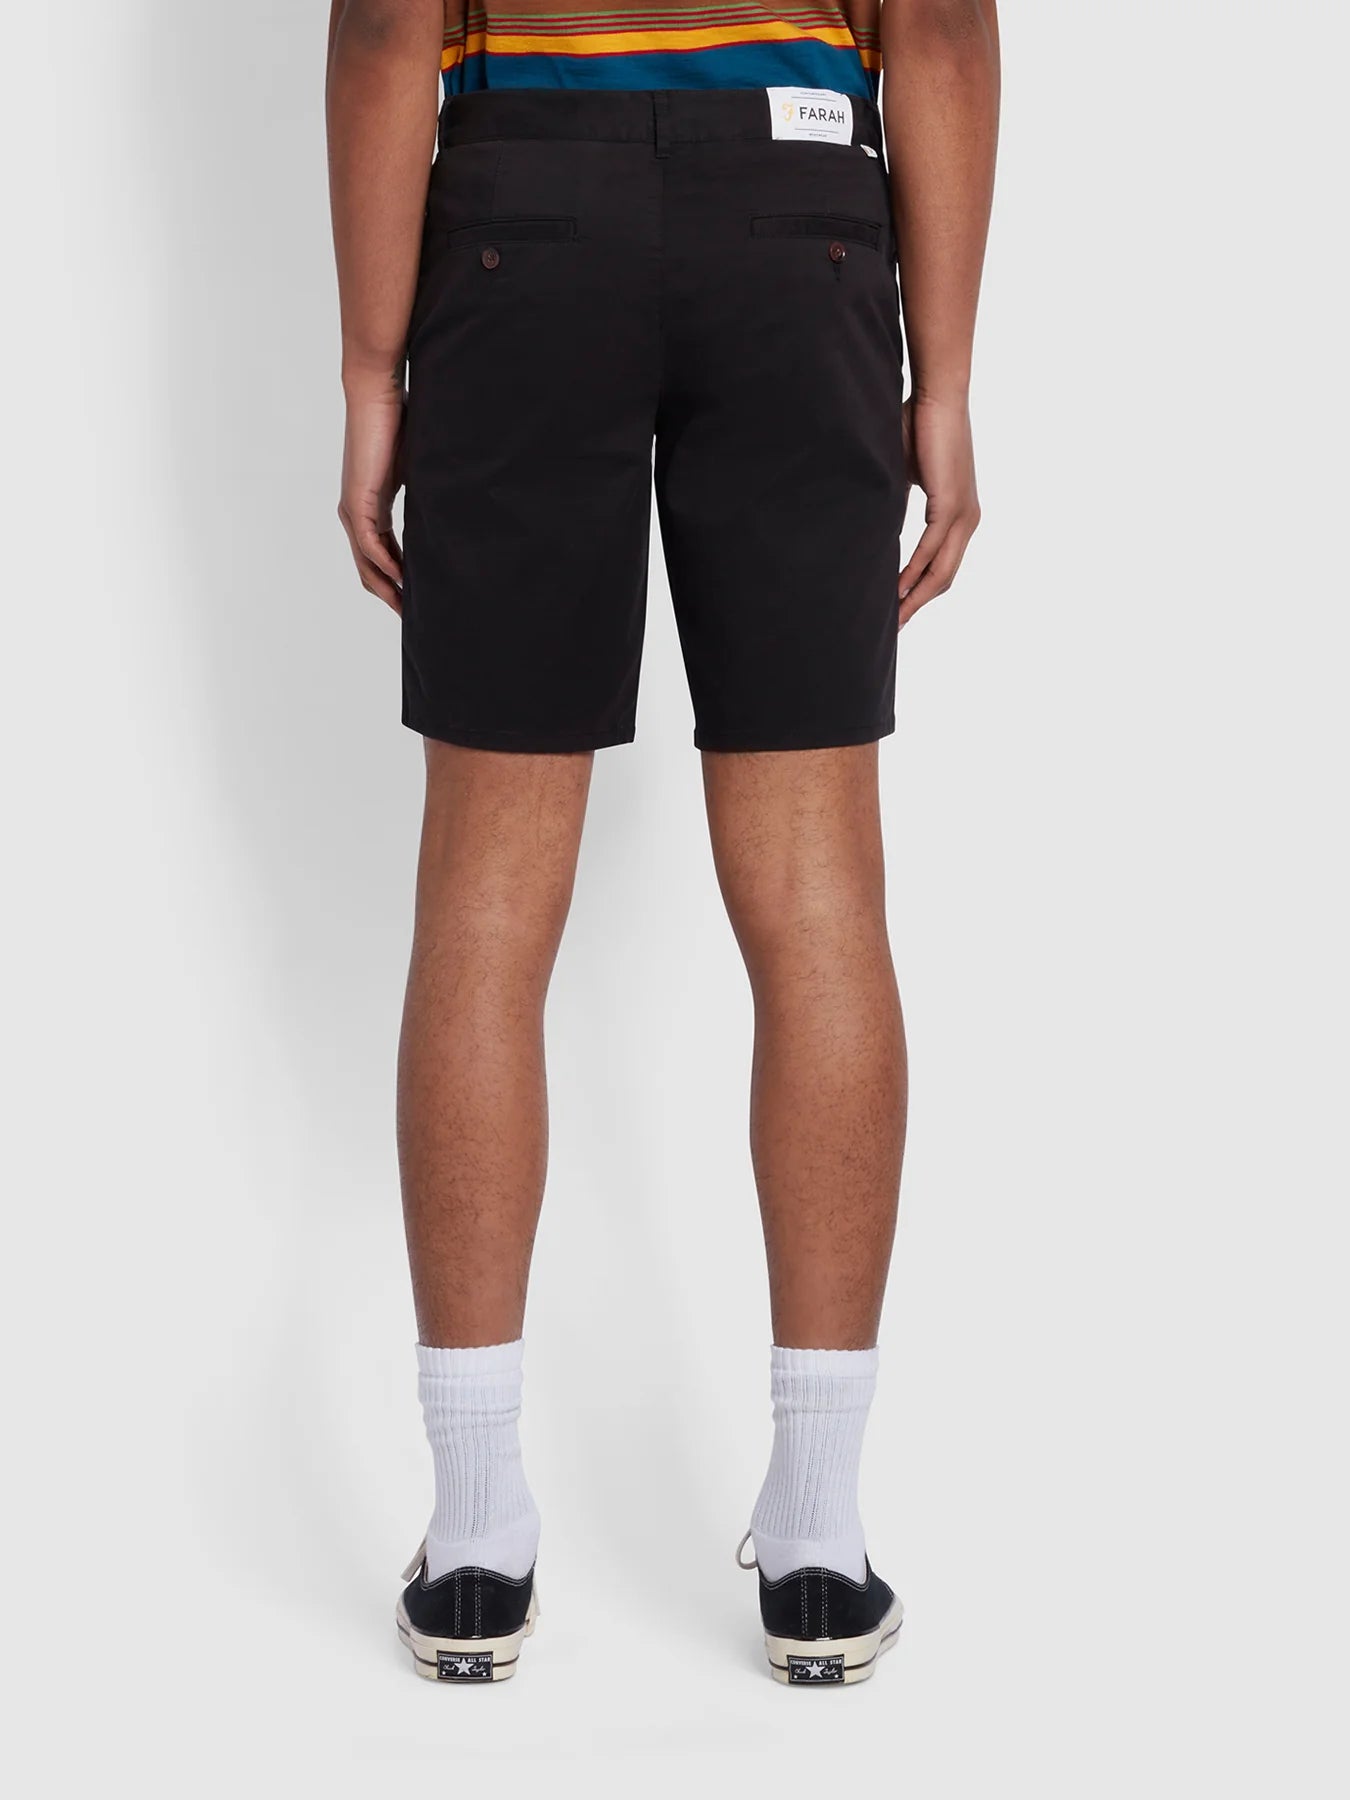 Farah Hawk Regular Fit Organic Cotton Chino Shorts / Black